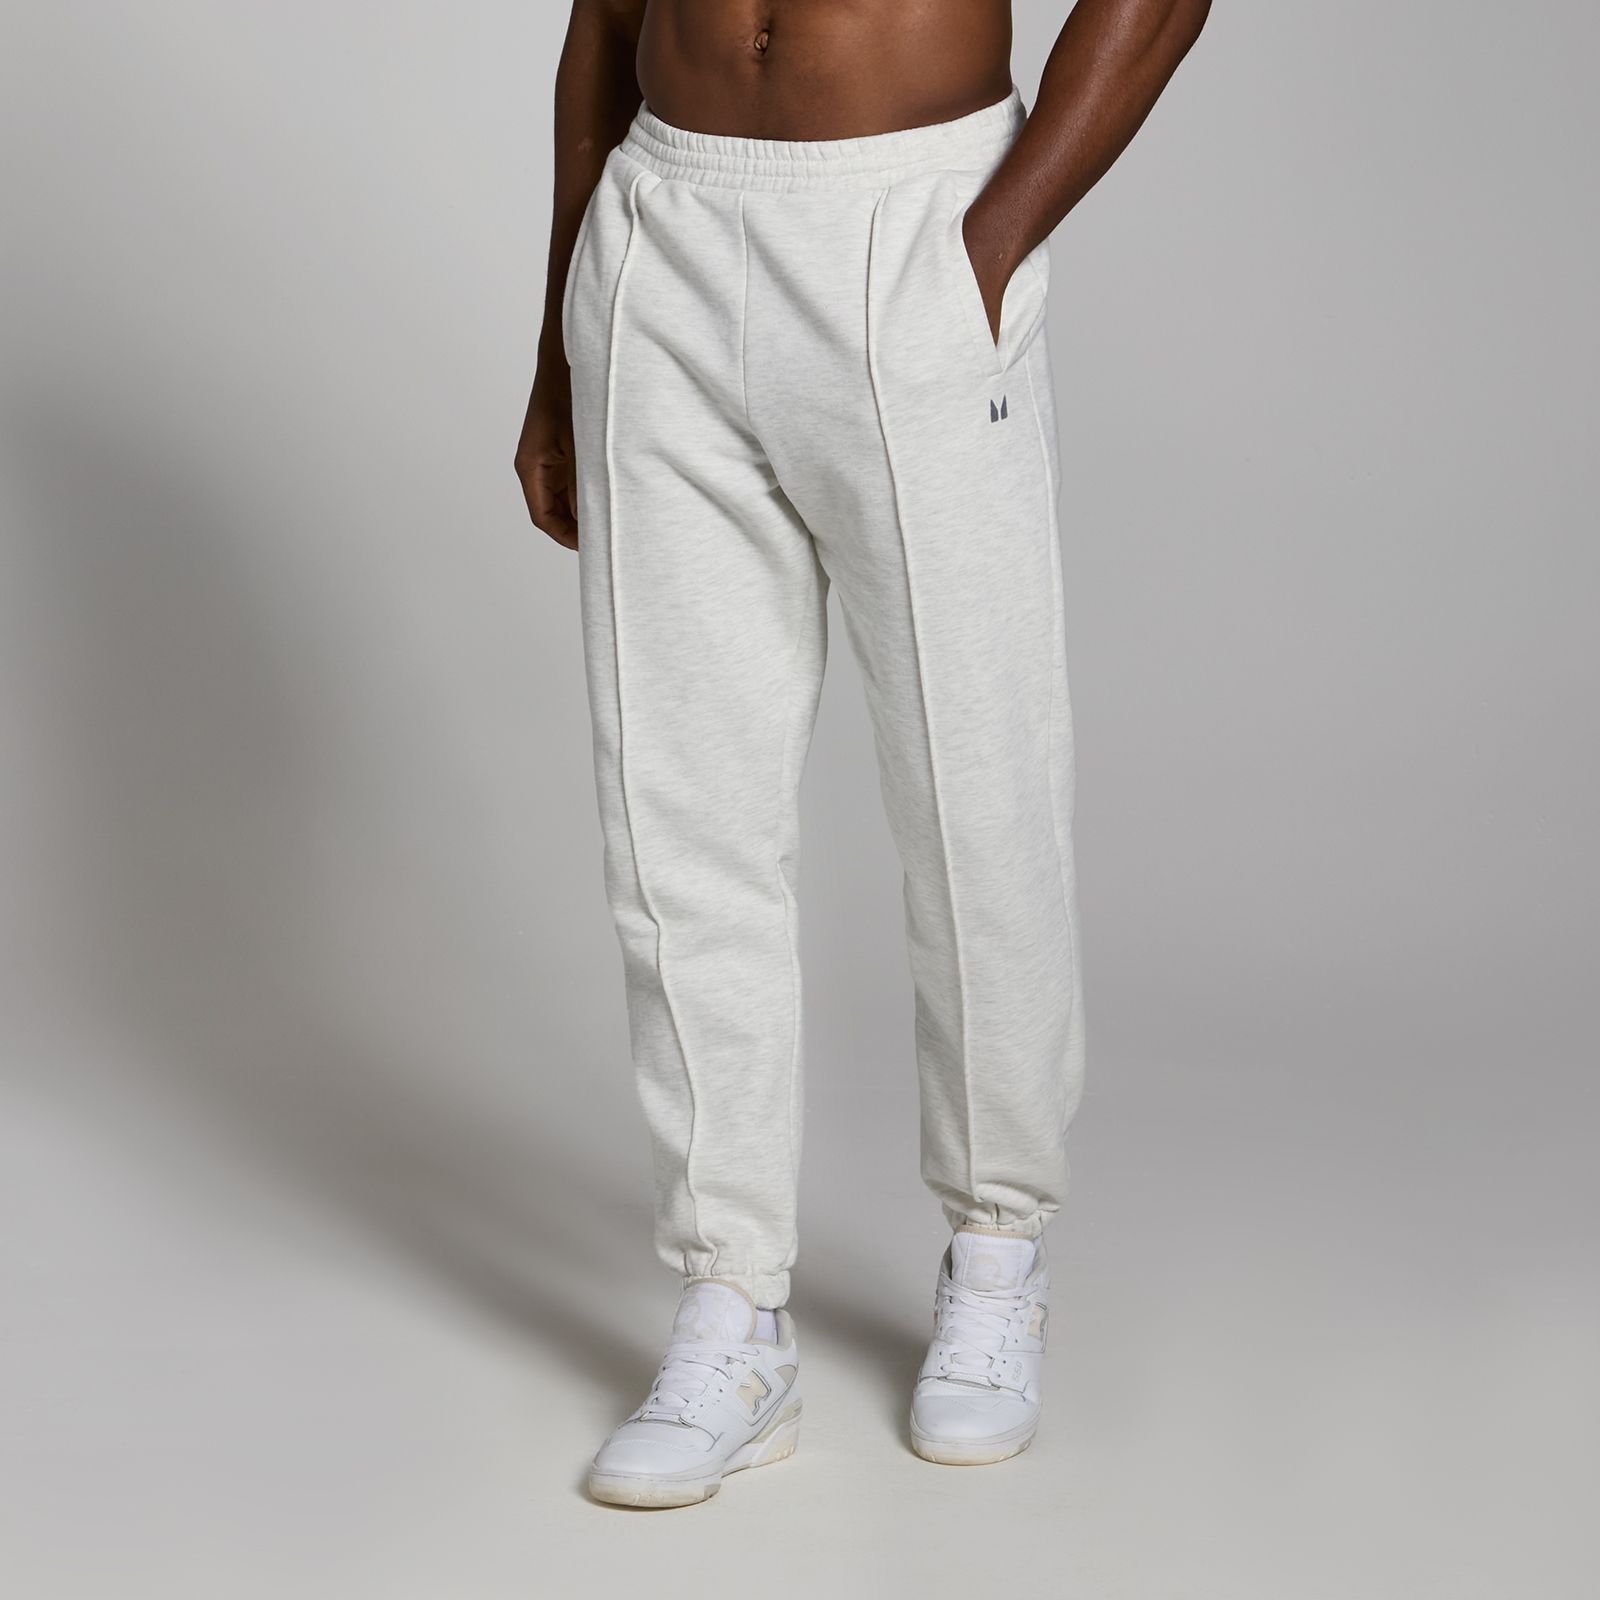 MP muške predimenzionirane sportske hlače za teške uvjete rada Lifestyle - Light Grey Marl - XS